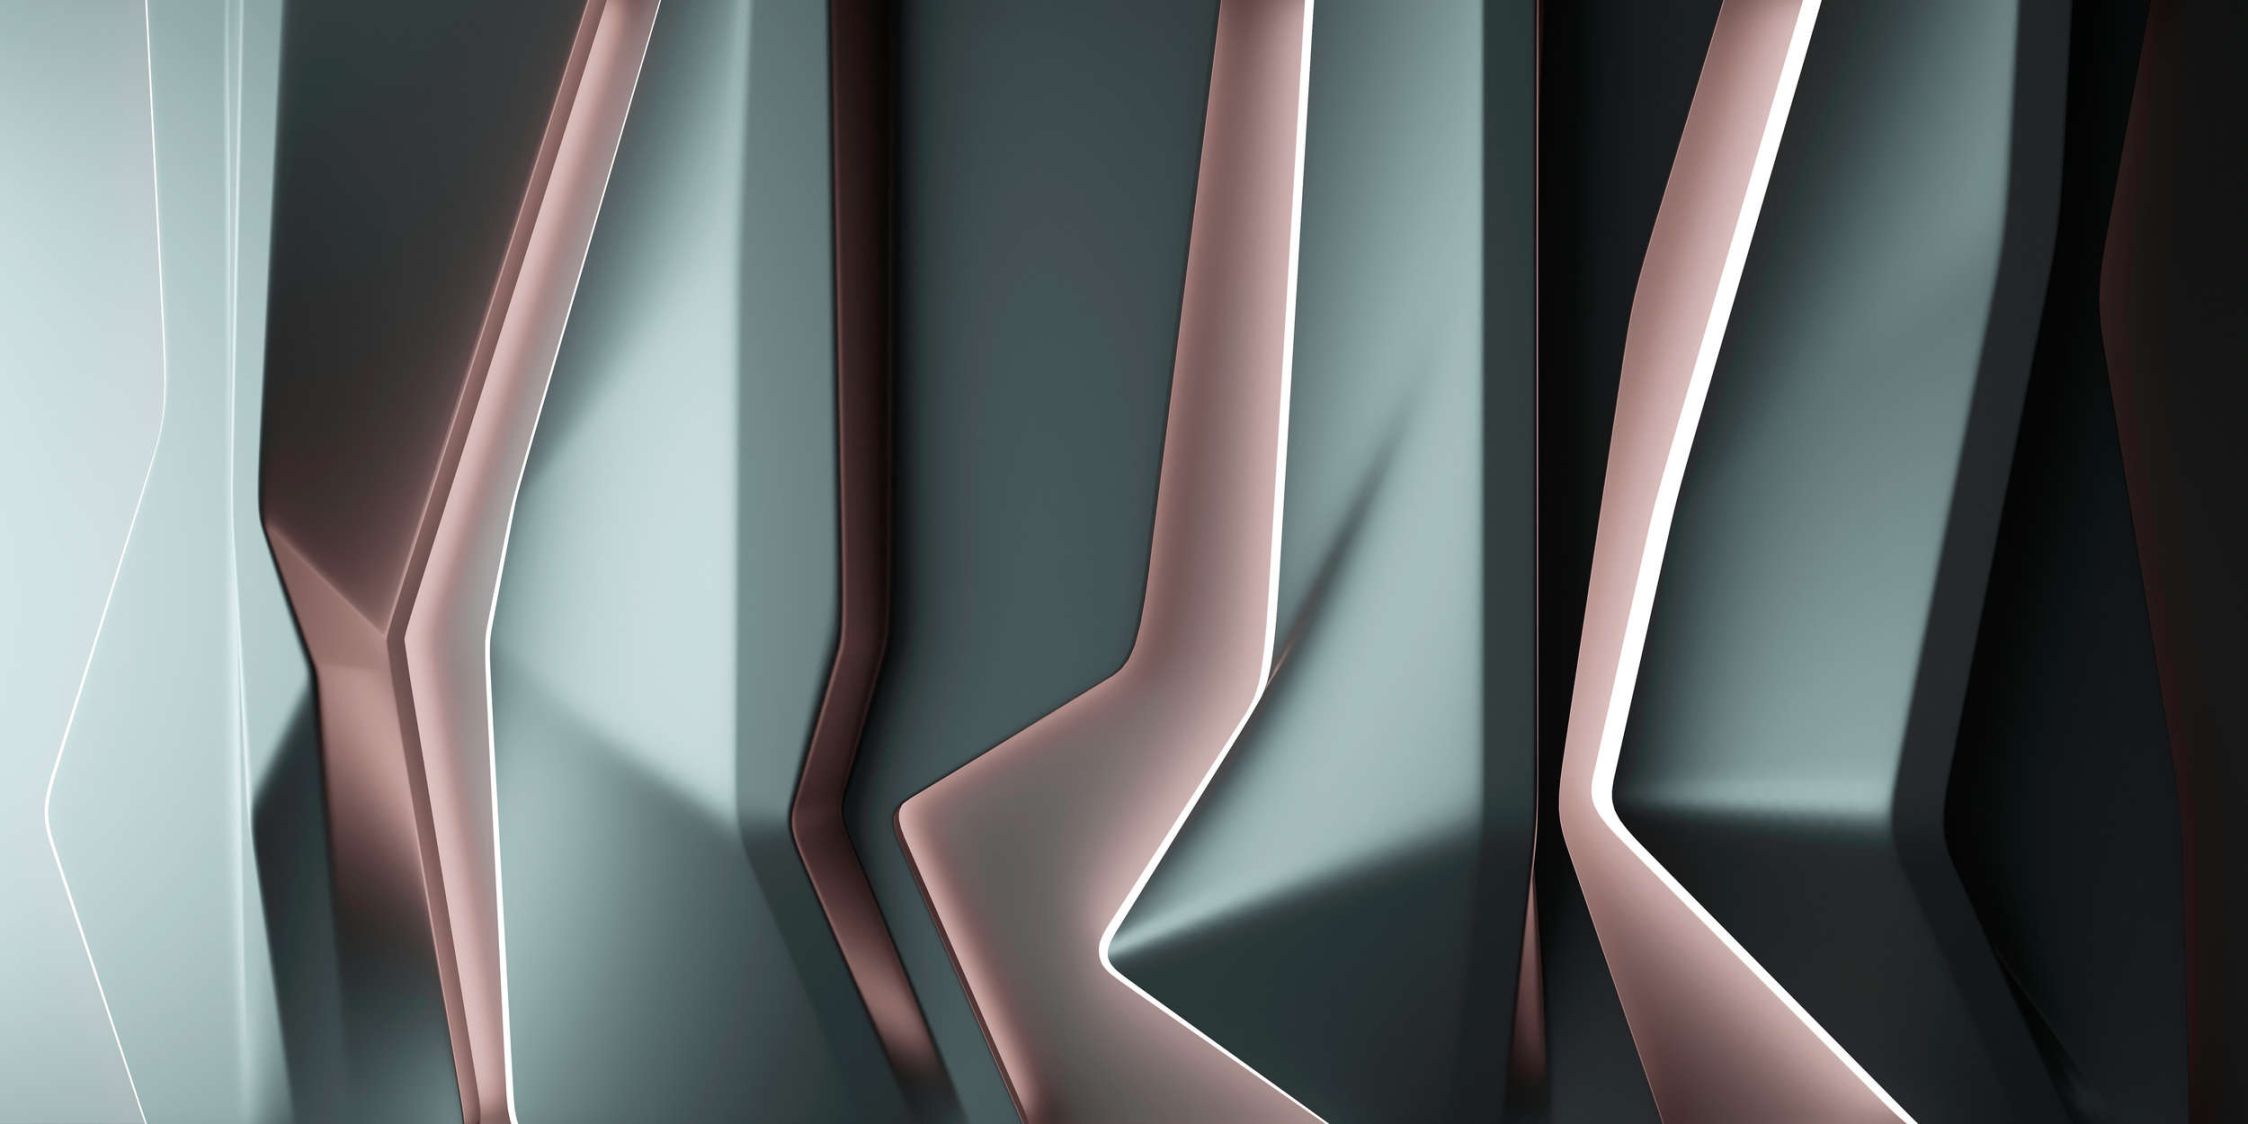             platinum 1 - Digital behang »in futuristisch lijnenspel - Licht structuurvlies
        